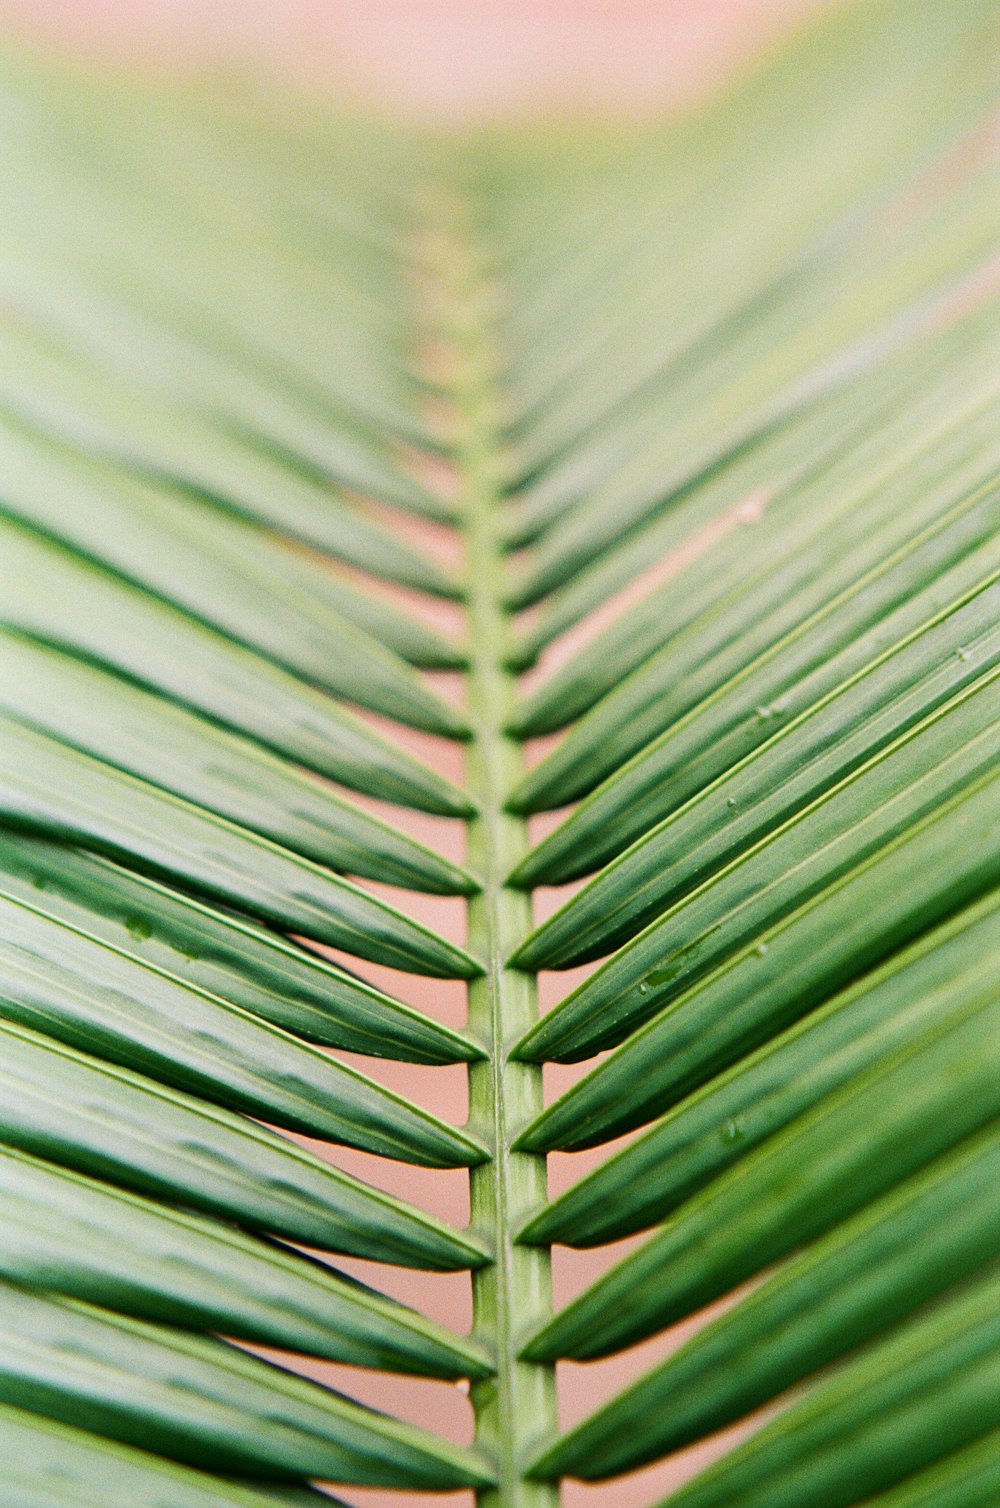 green leaf in macro lens